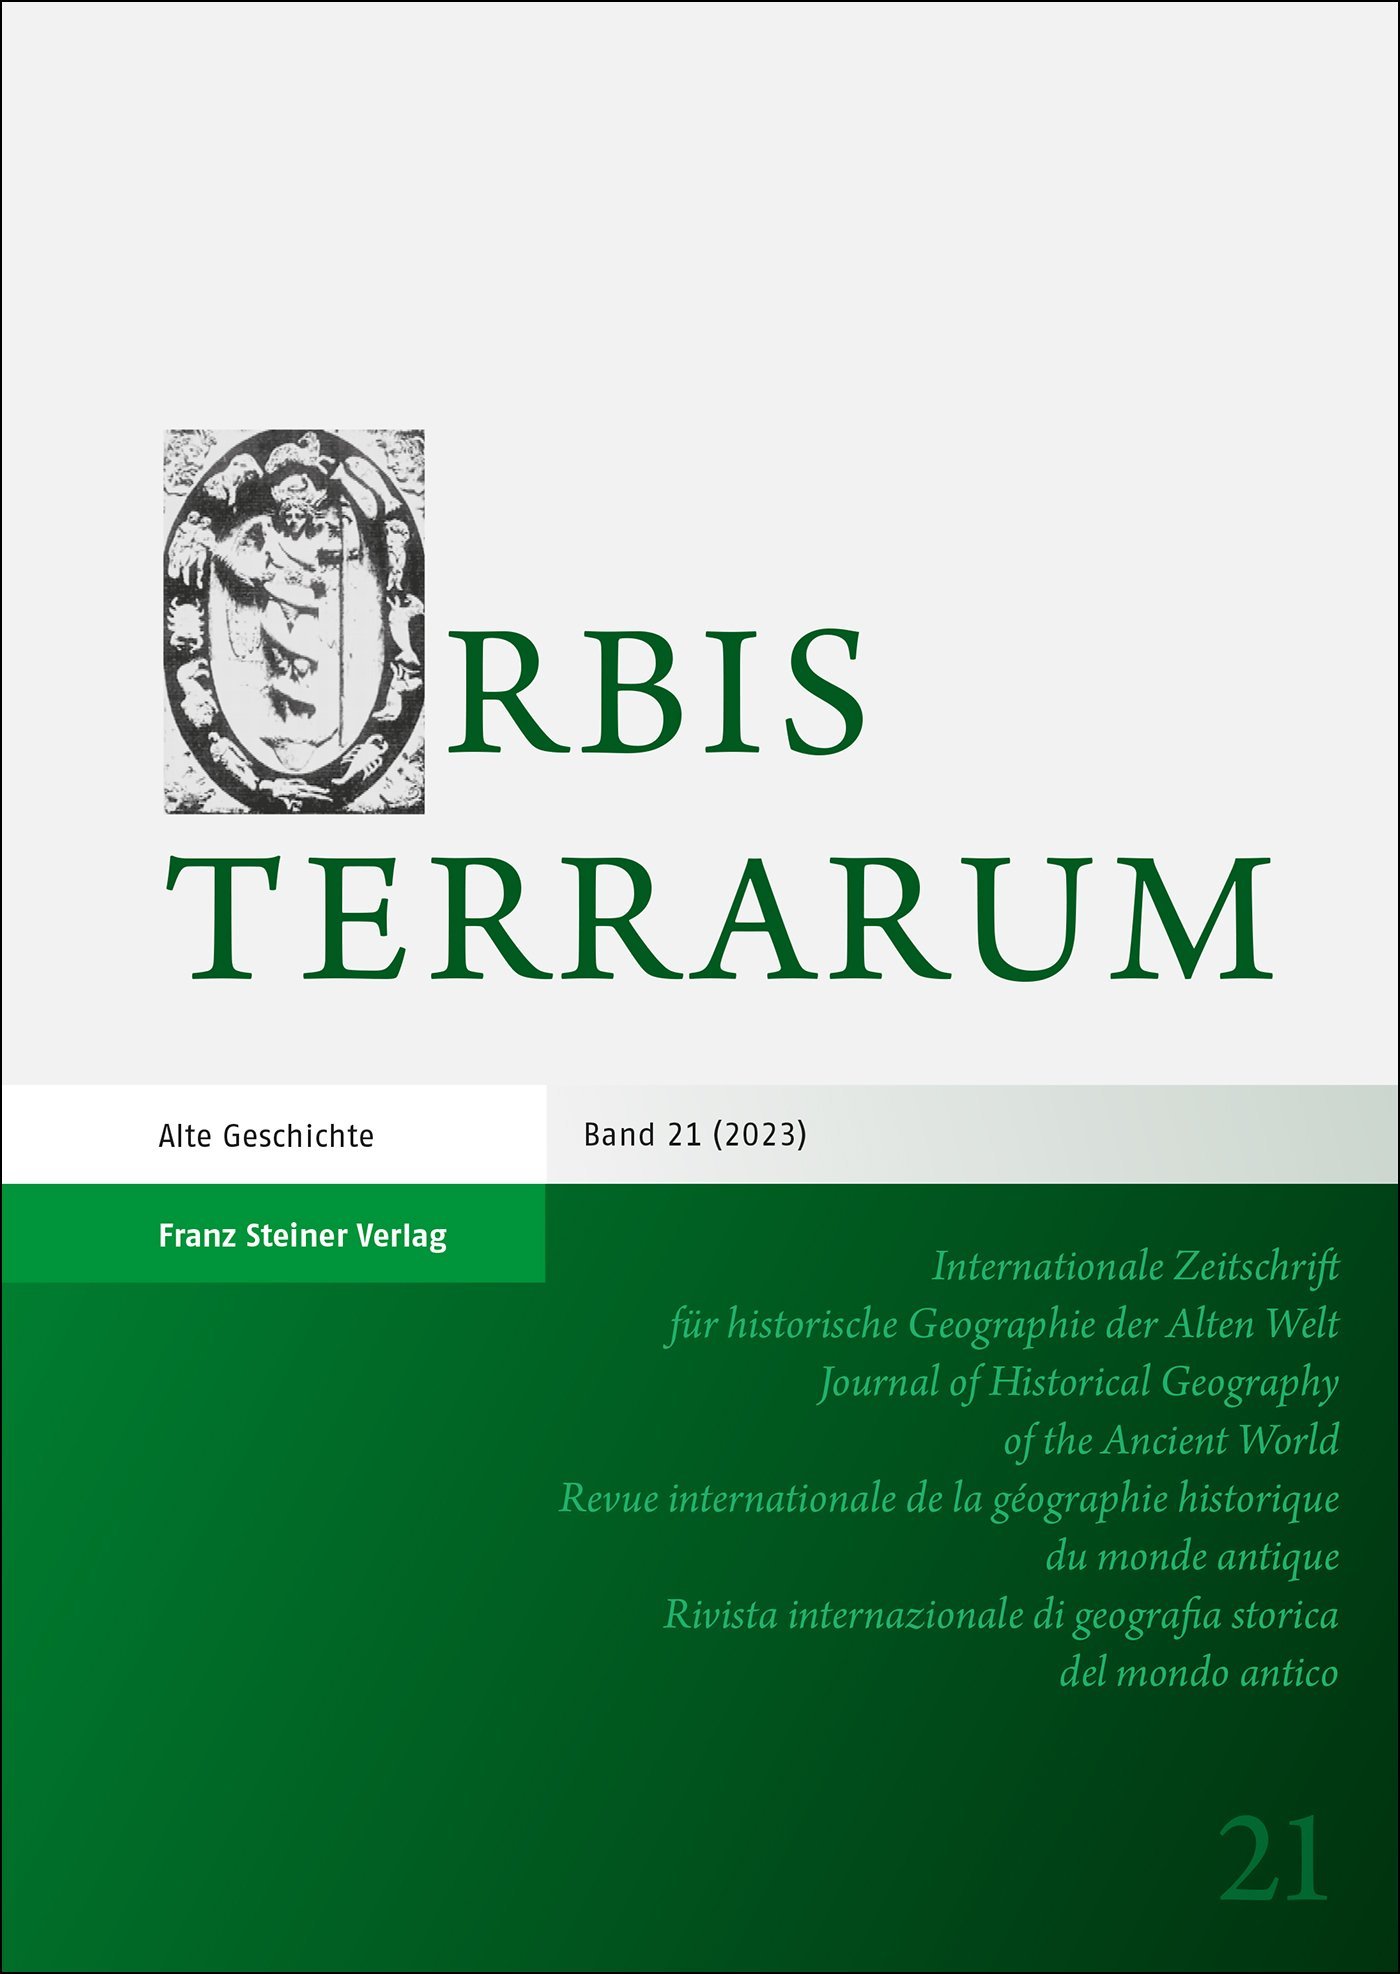 Orbis Terrarum 21 (2023)